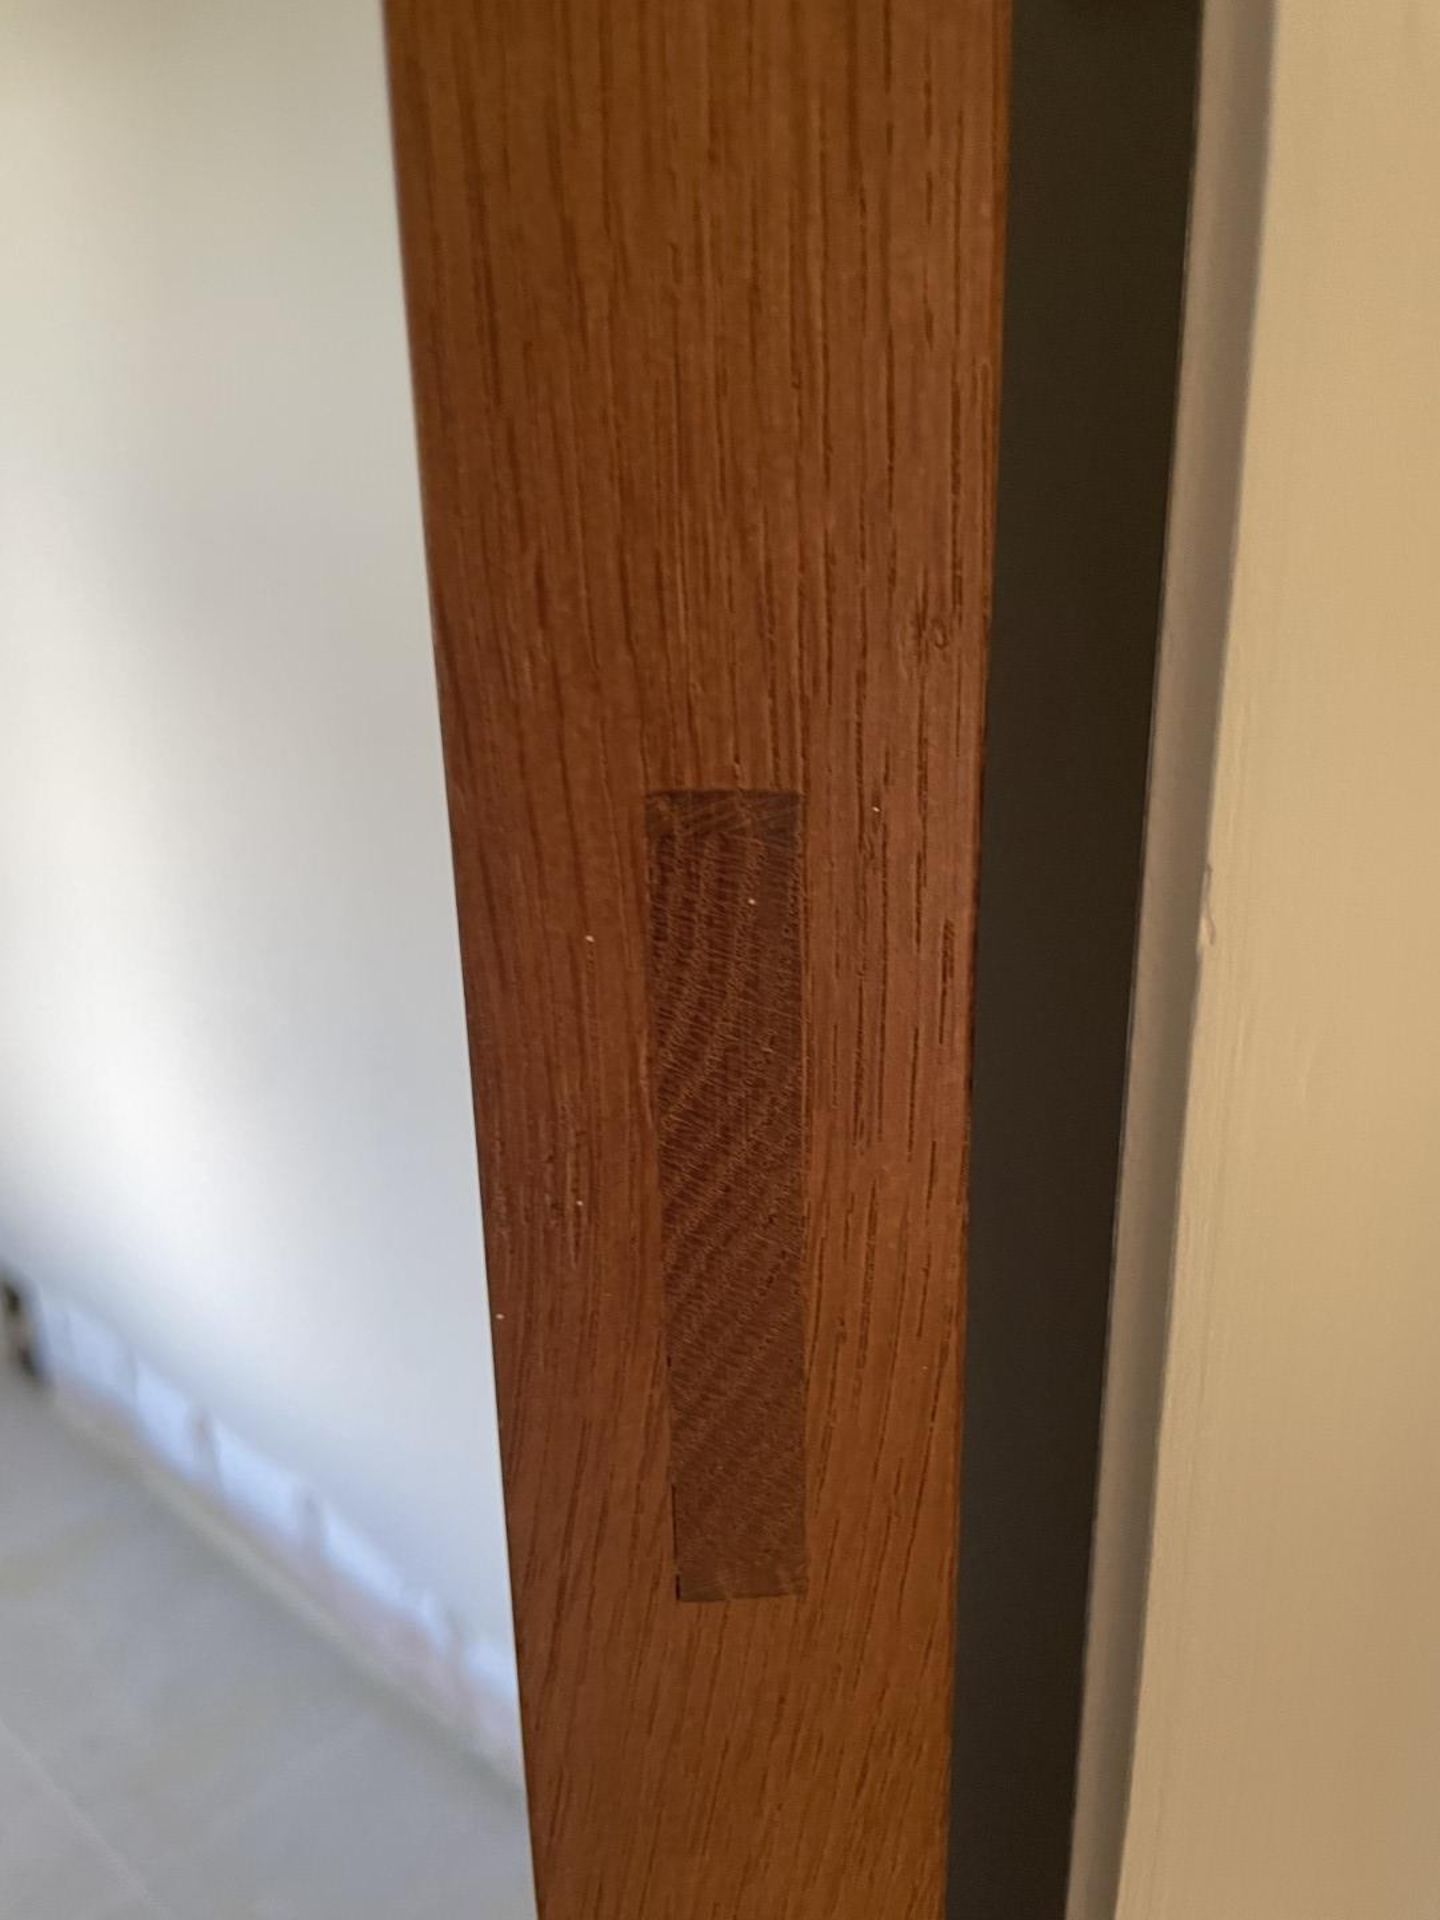 1 x Solid Oak Wooden Lockable Internal Door - Ref: PAN201 / INHLWY - CL896 - NO VAT - Image 8 of 10